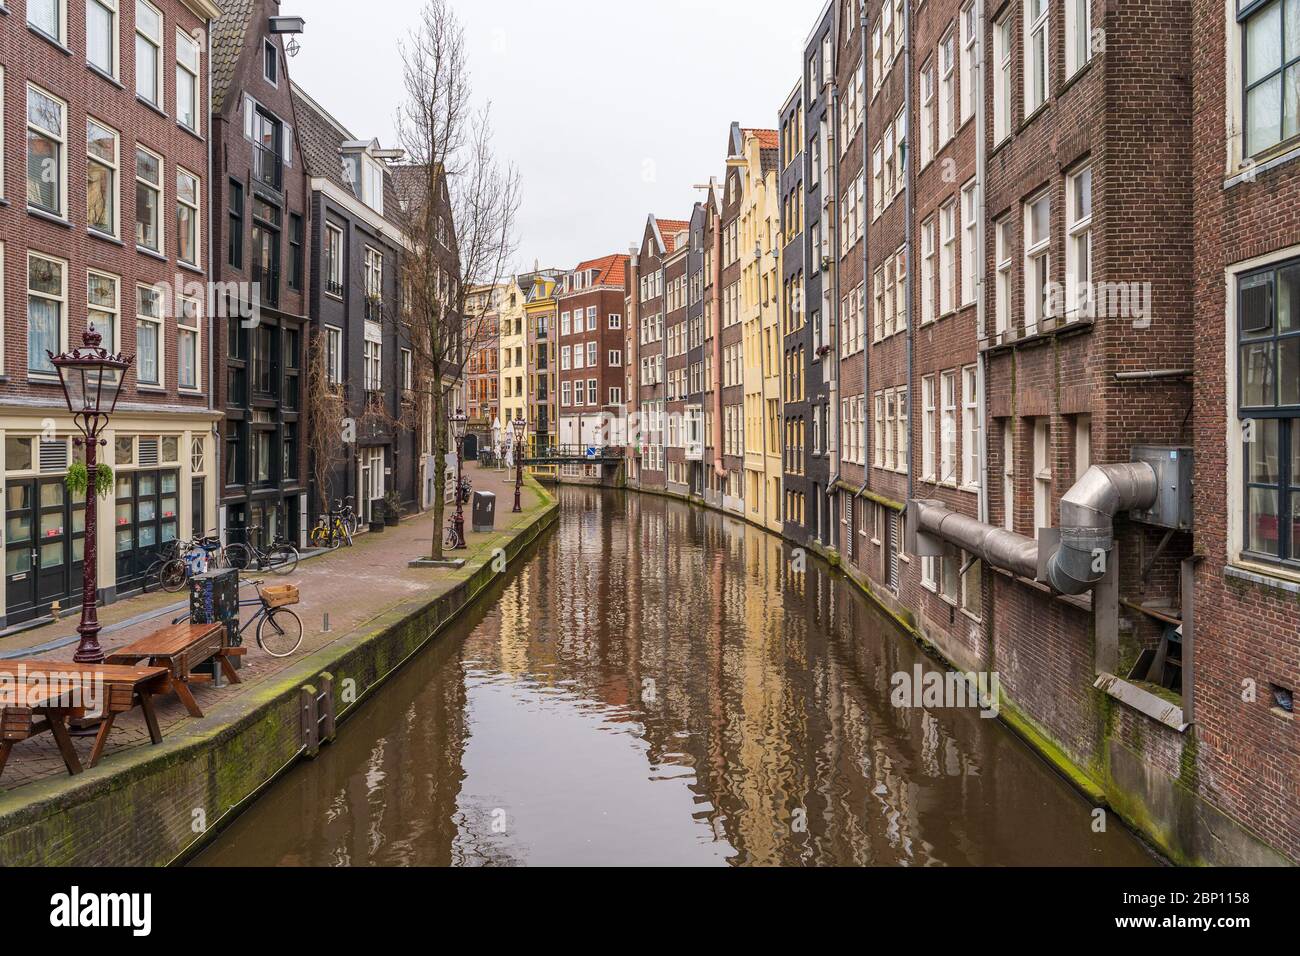 Typische berühmte Wasserkanal und Tanzhäuser in leerem Amsterdam Innenstadt ohne Menschen aufgrund Coronavirus Covid-19, Niederlande. Stockfoto